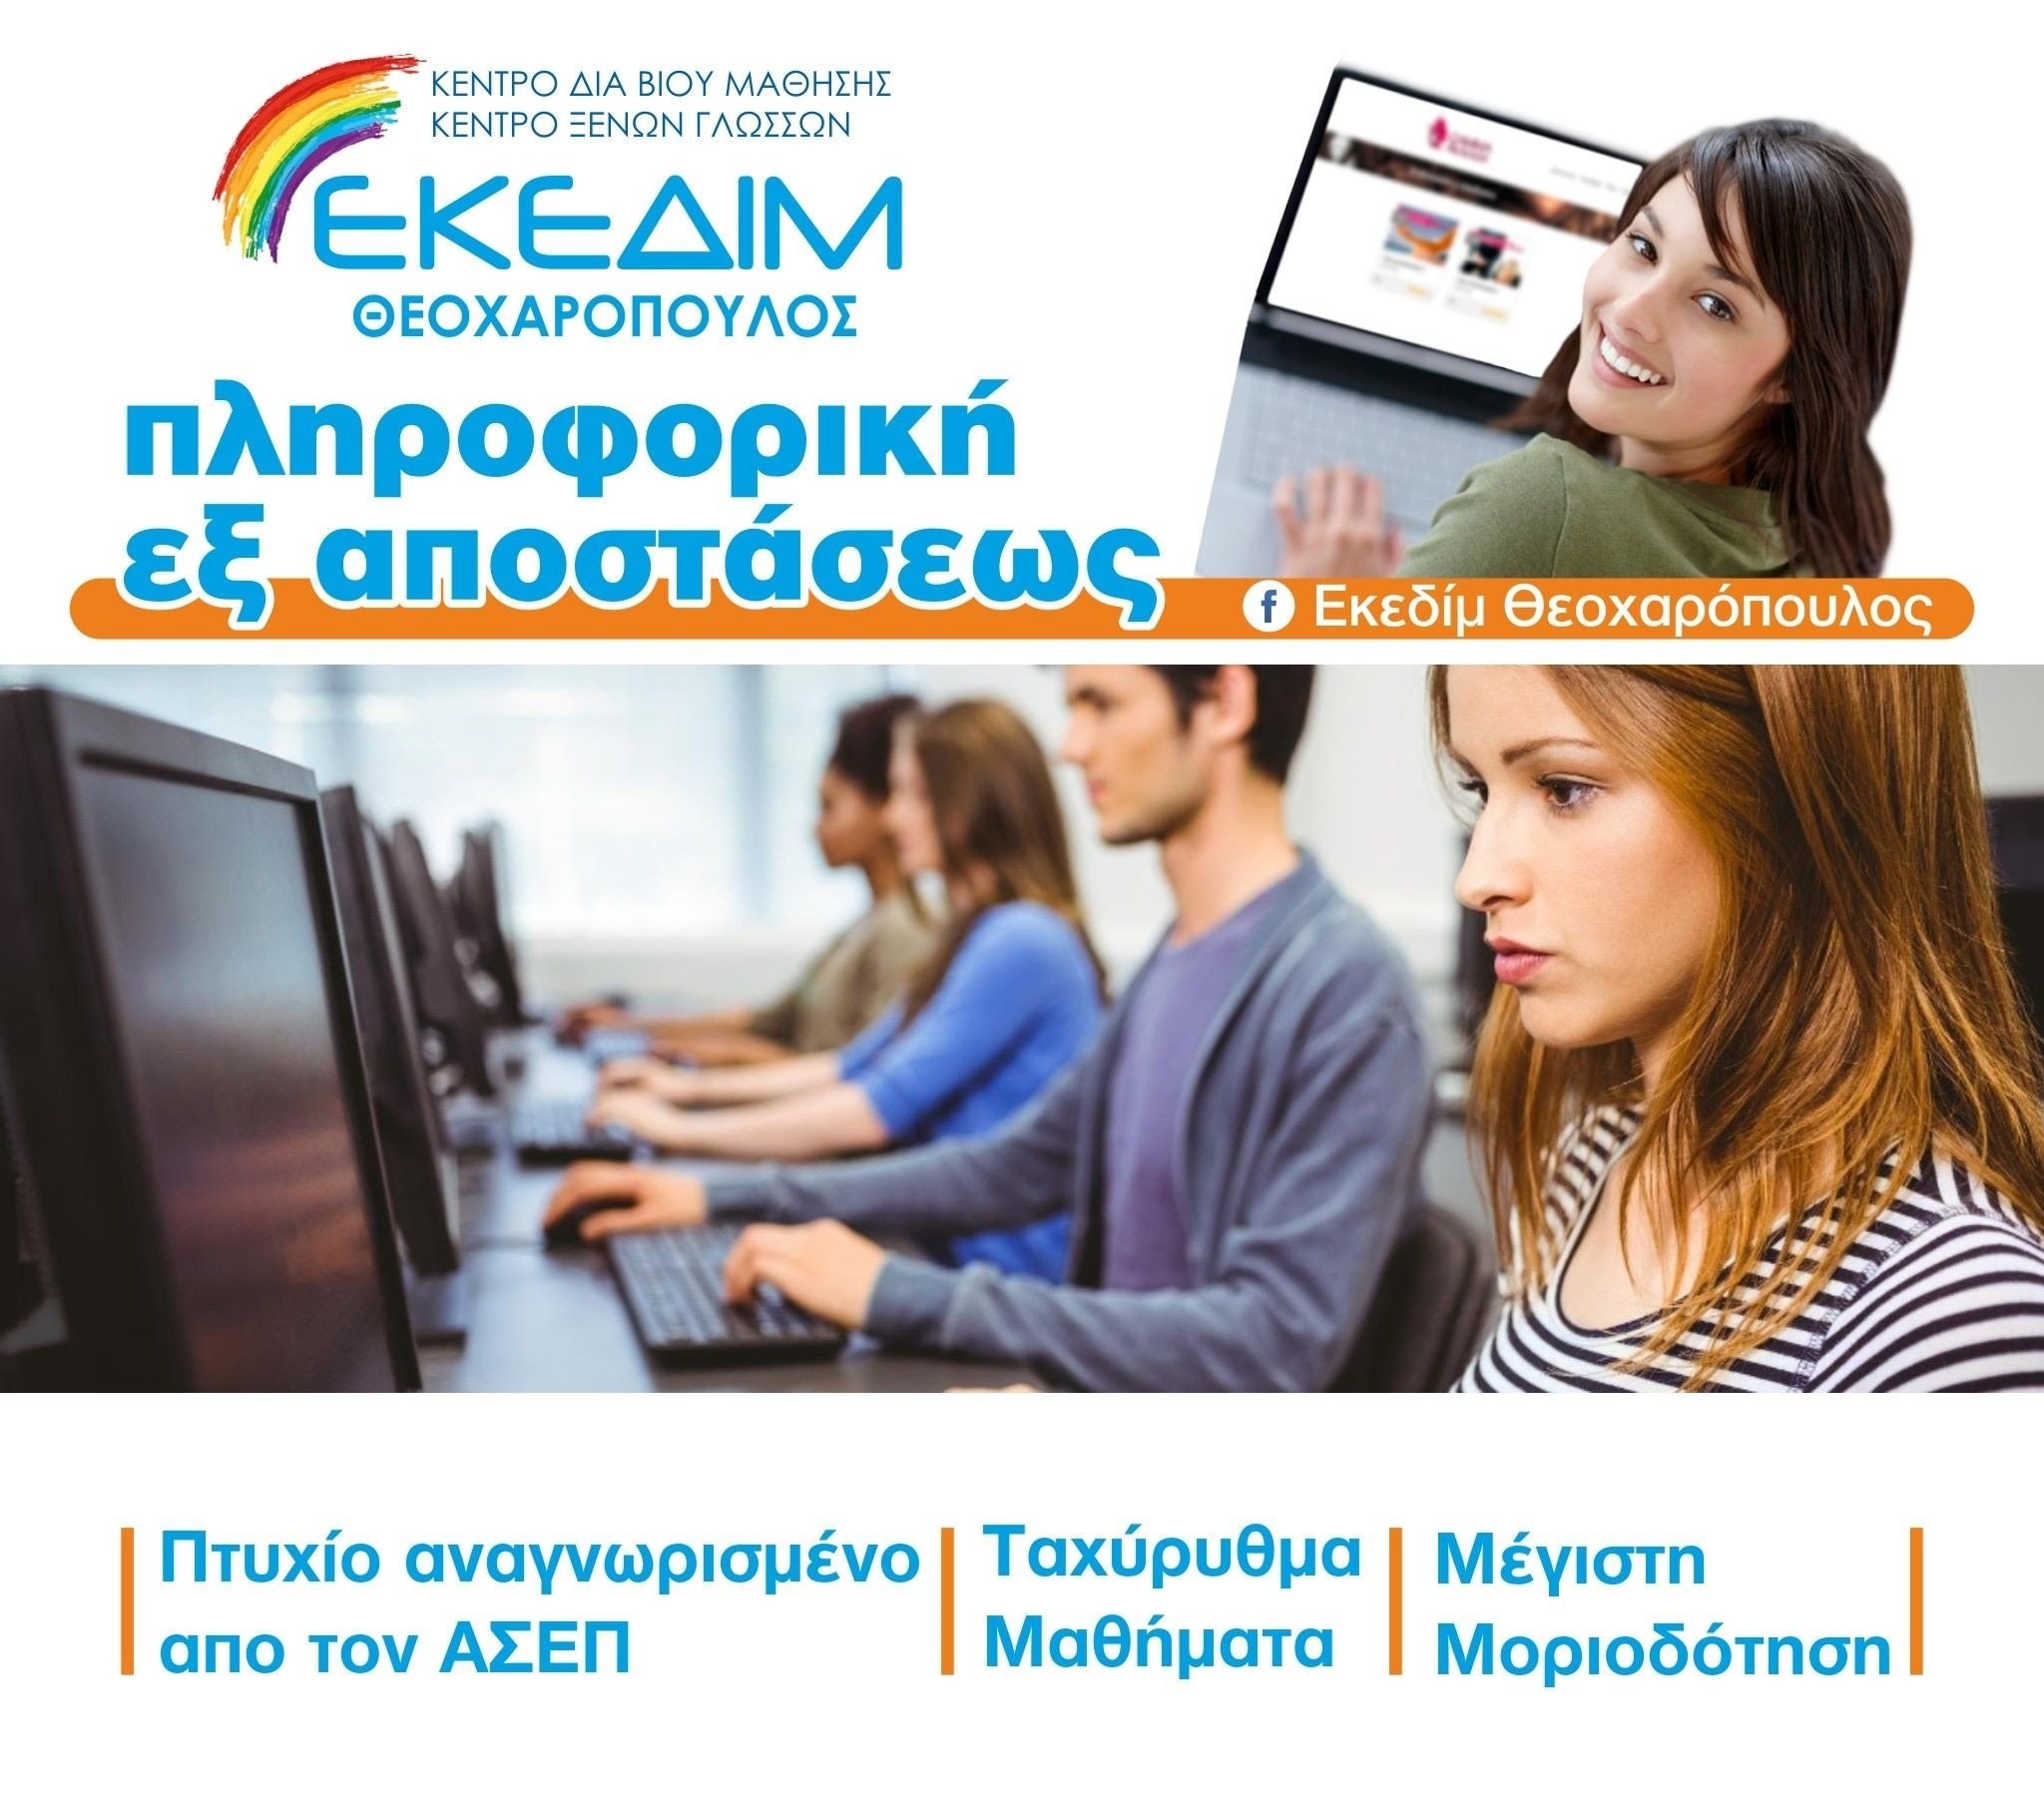 ΕΚΕΔΙΜ Θεοχαρόπουλος- Ταχύρυθμα μαθήματα πληροφορικής για απόκτηση πτυχίου αναγνωρισμένο από τον ΑΣΕΠ